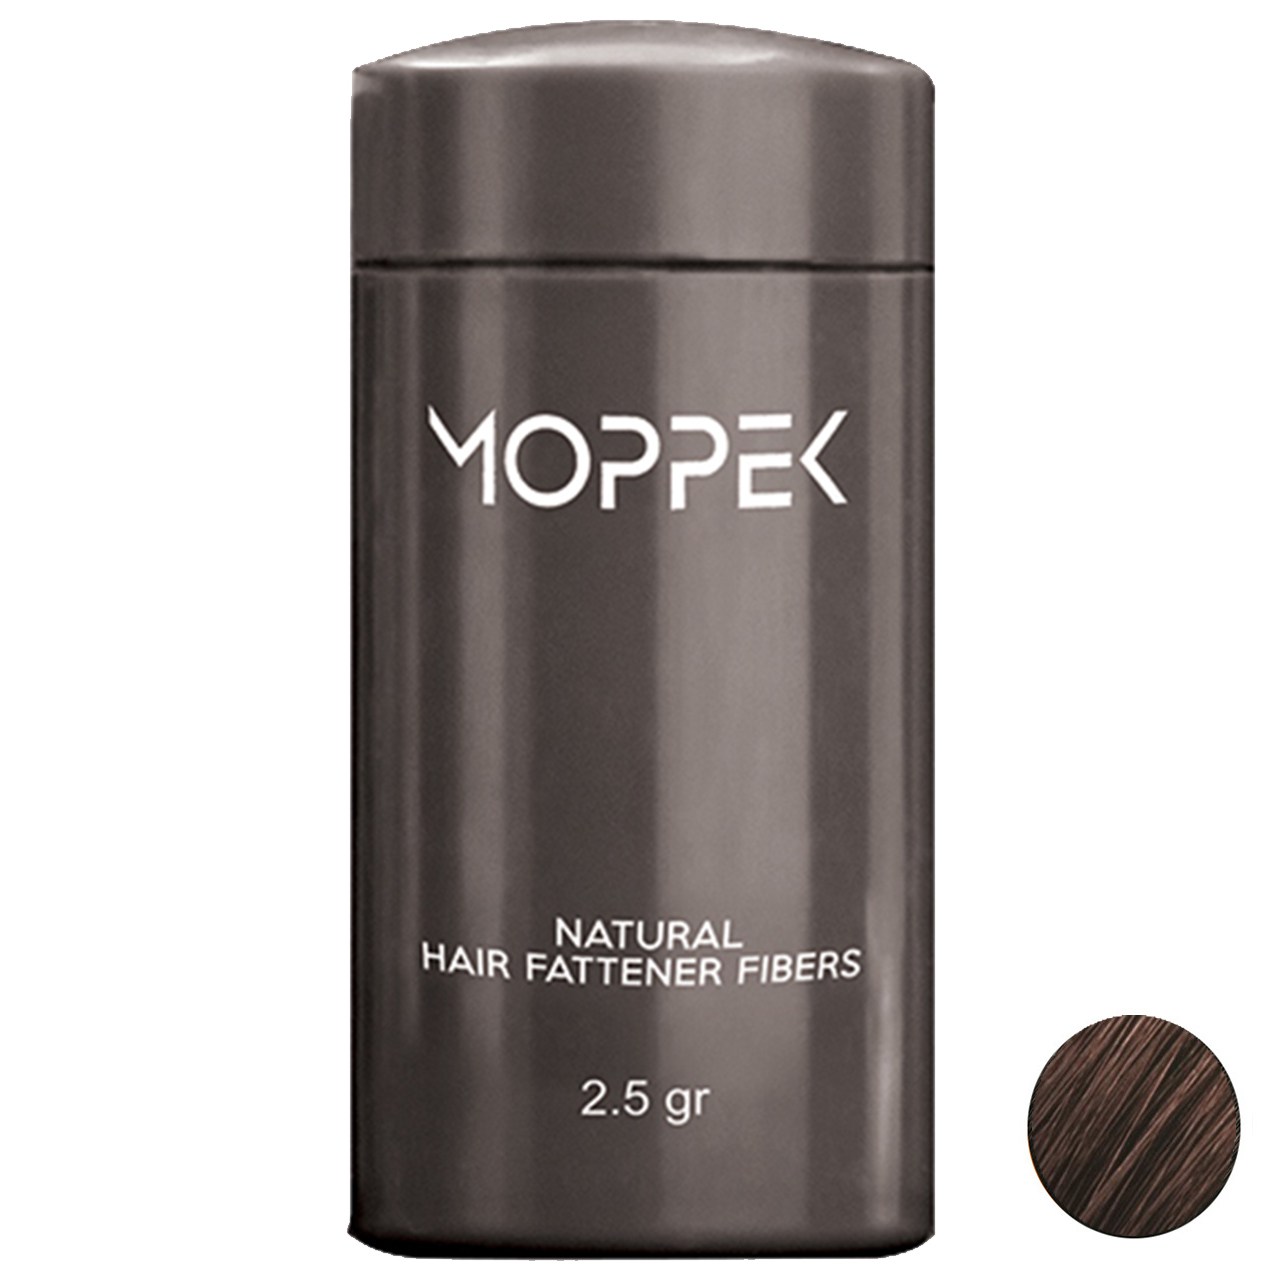 پودر پرپشت کننده موی موپک مدل Dark Brown مقدار 2.5 گرم